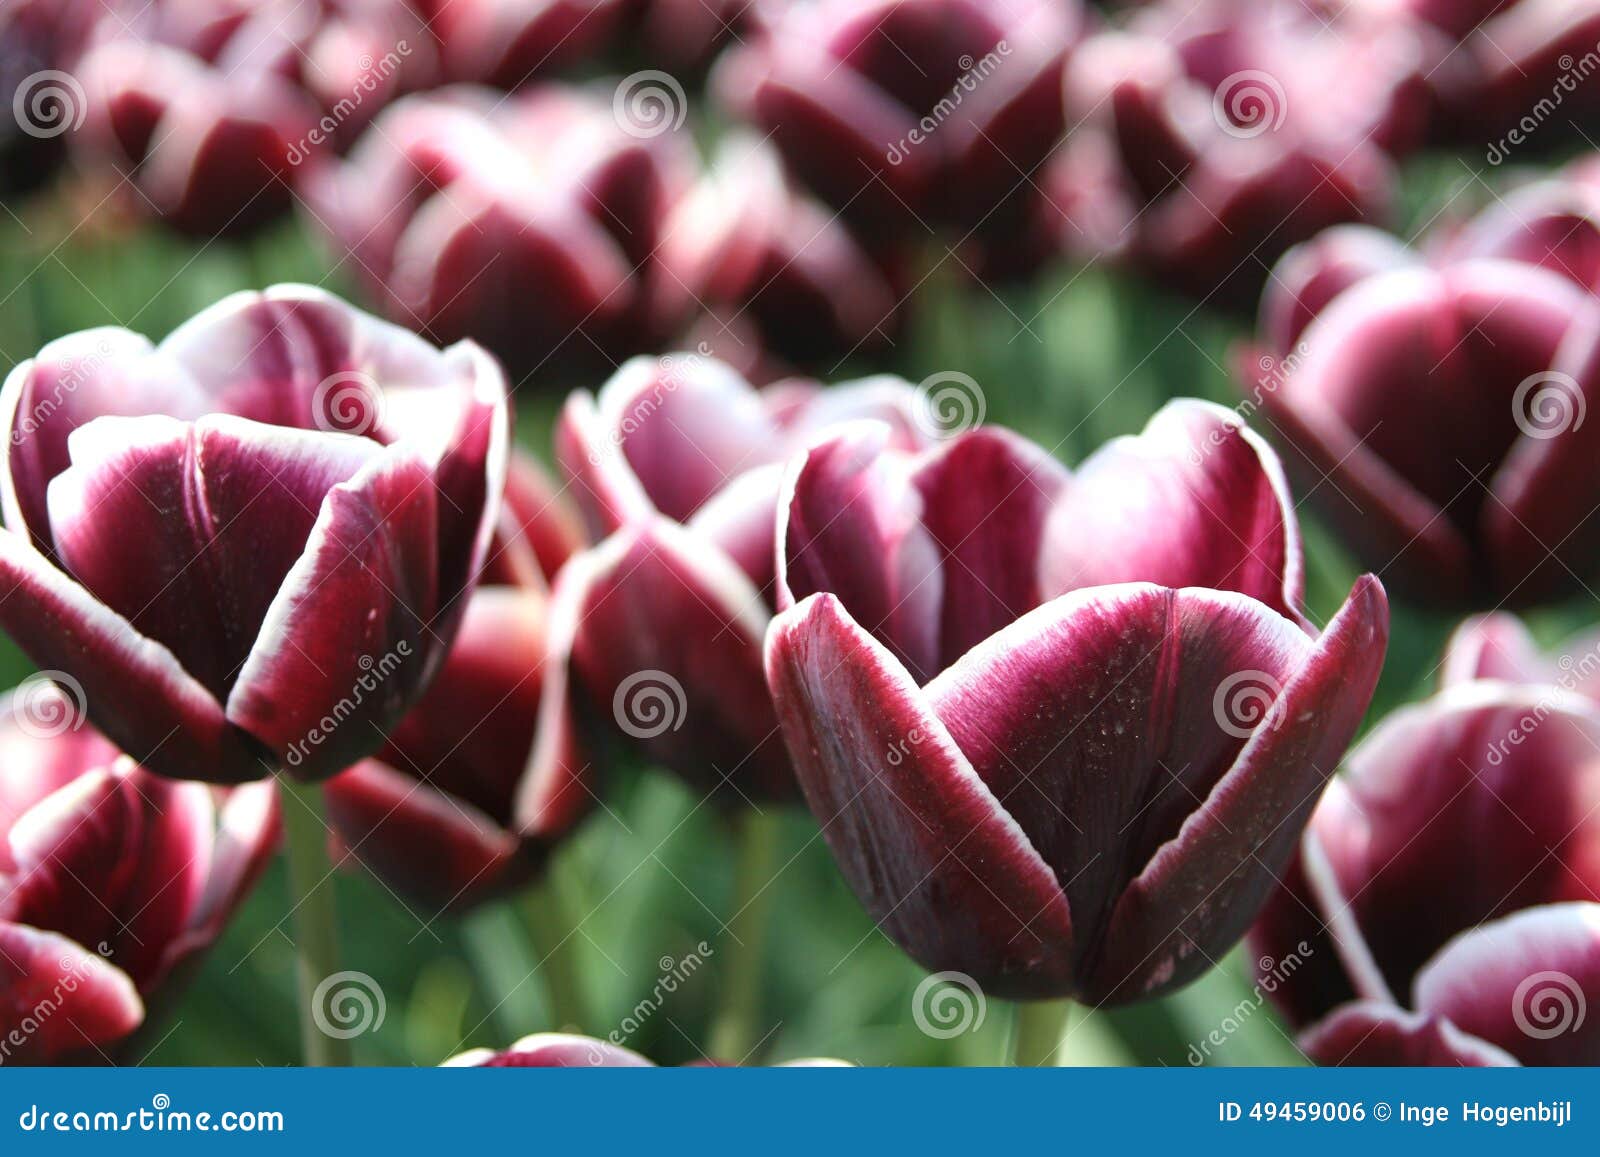 exclusive dutch tulips for the export industries, noordoostpolder, netherlands